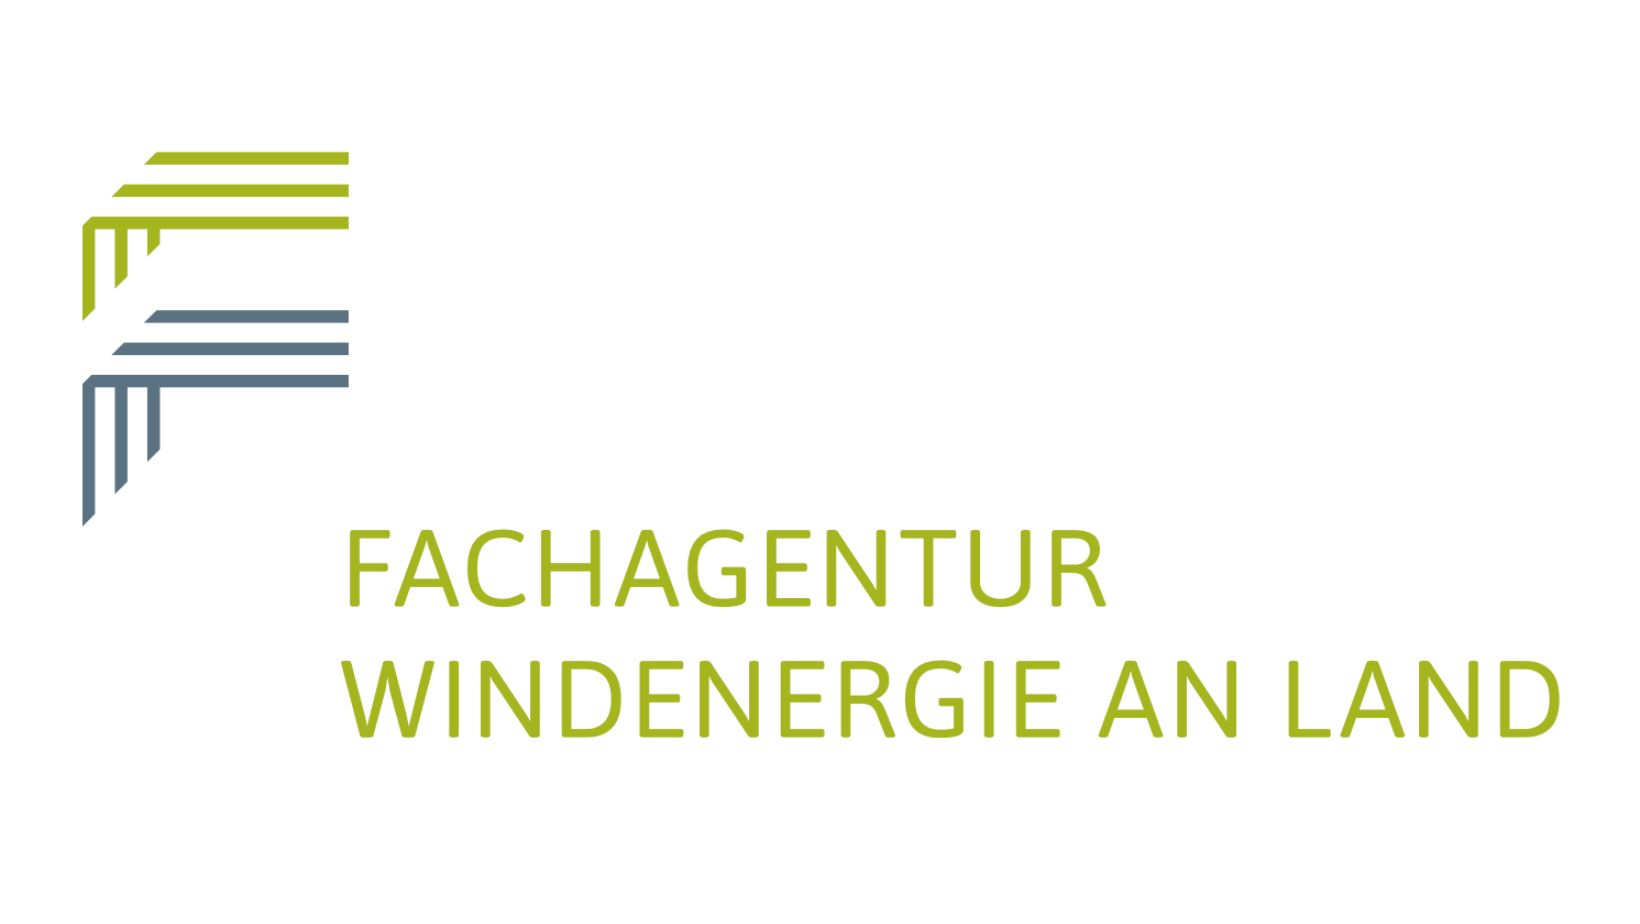 Man sieht das Logo in grün und blau der Fachagentur für Windenergie an Land (FA Wind)